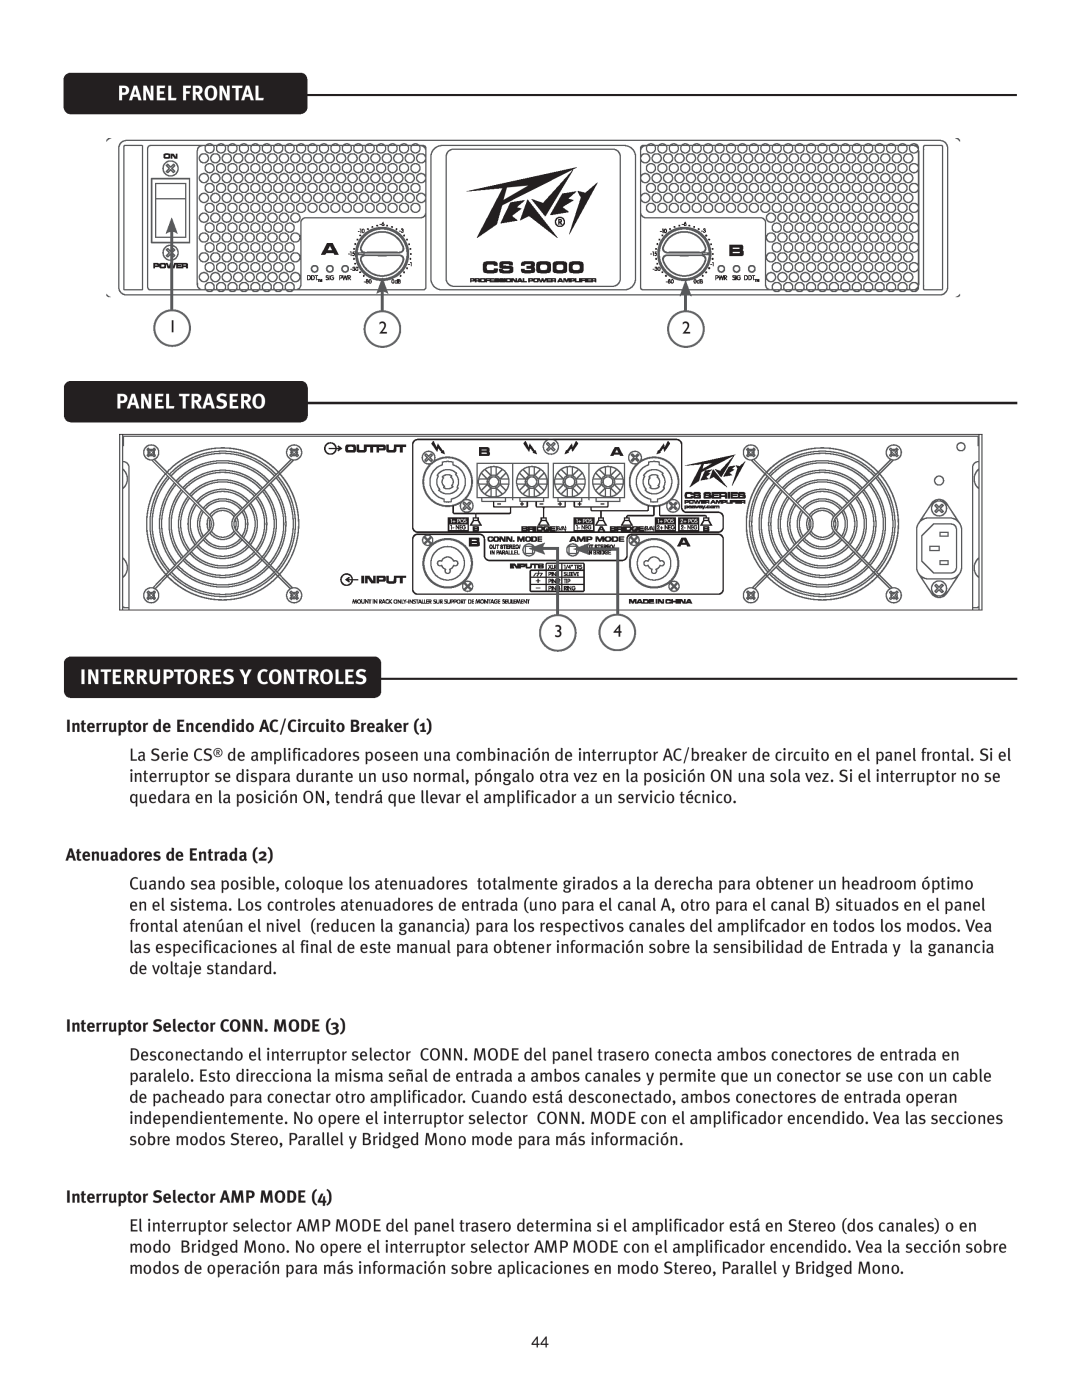 Peavey CS 3000 Panel Frontal, Panel Trasero, Interruptores Y Controles, Interruptor de Encendido AC/Circuito Breaker 